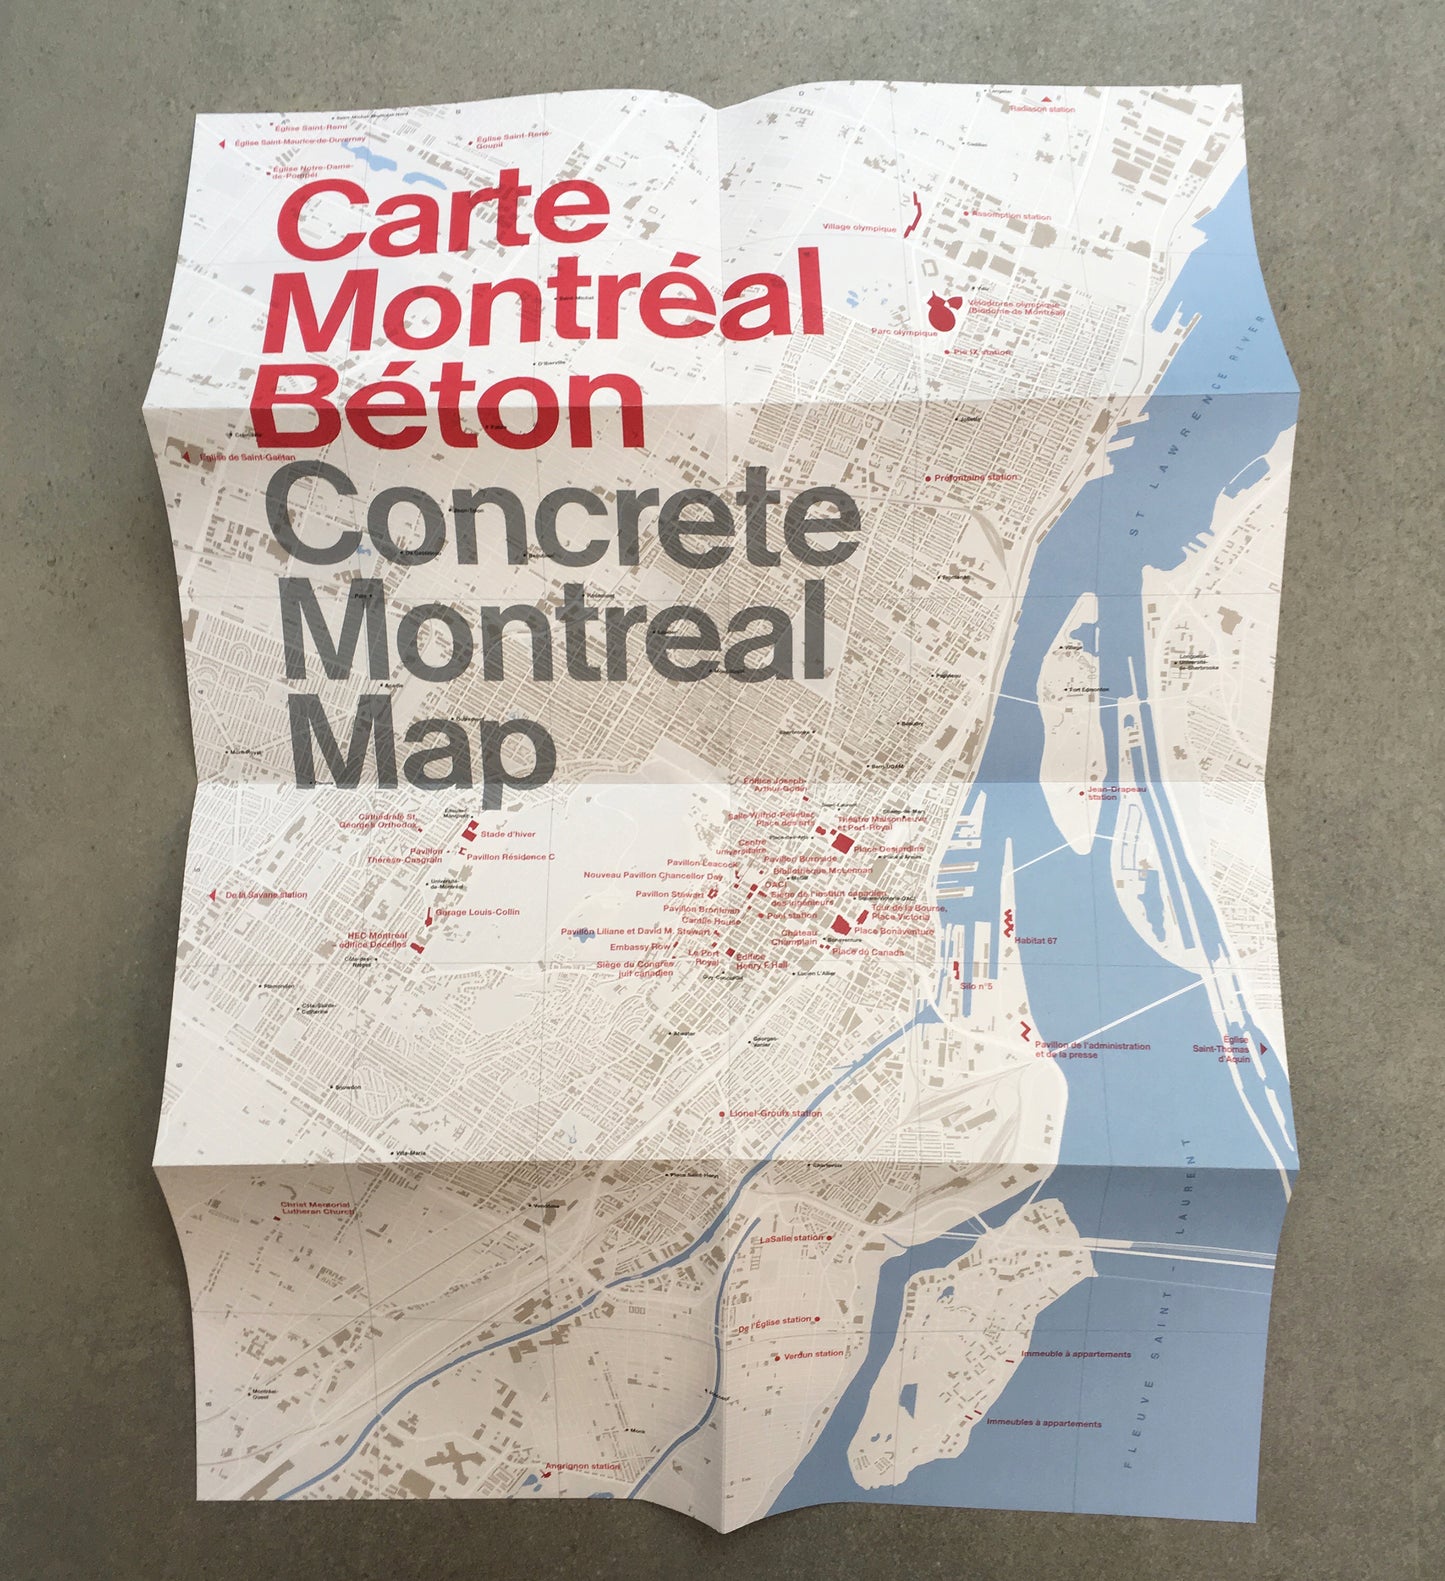 Concrete Montreal Map / Carte Montréal Béton